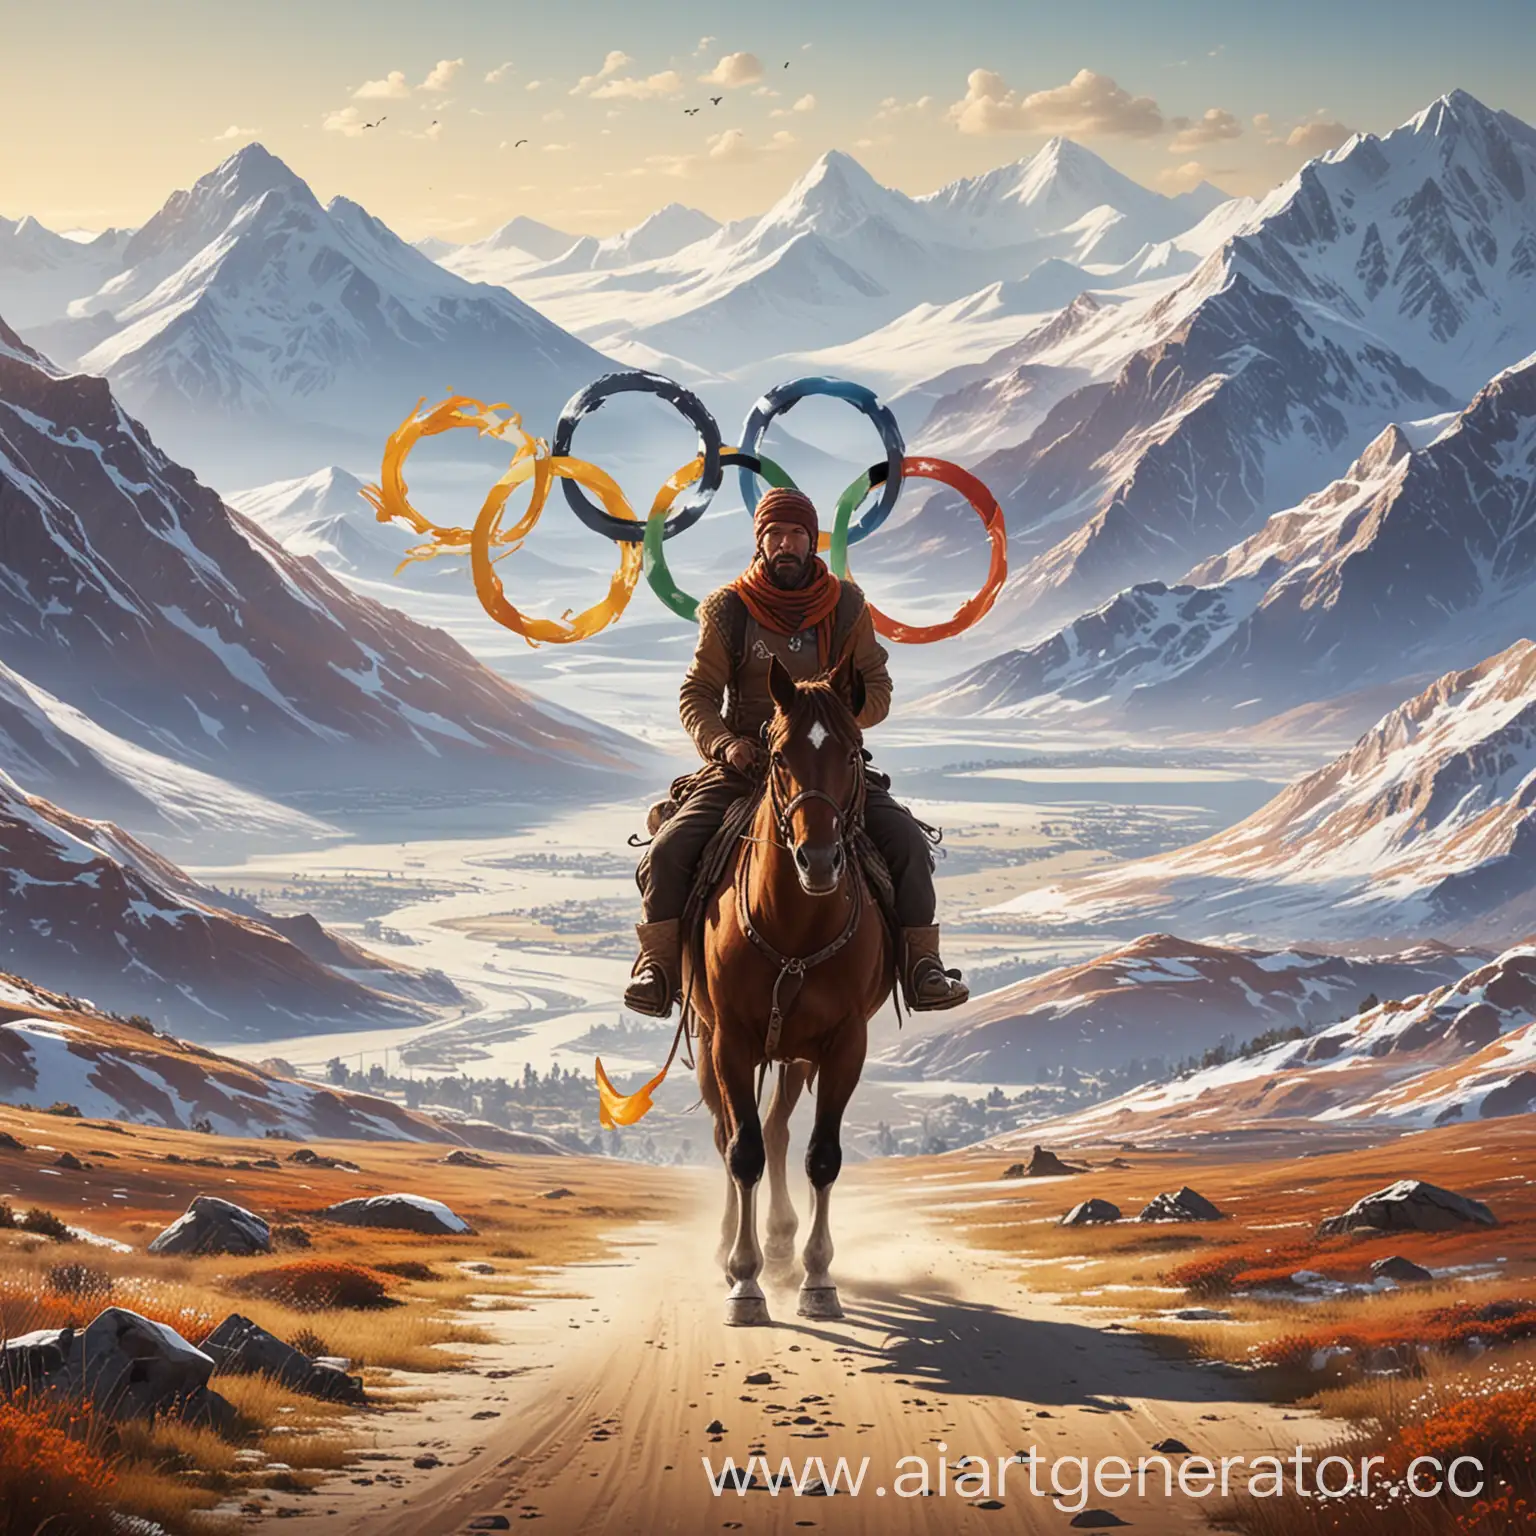 Афиша должна по концепции отражать связь между олимпийскими играми и всемирными играми кочевников.
